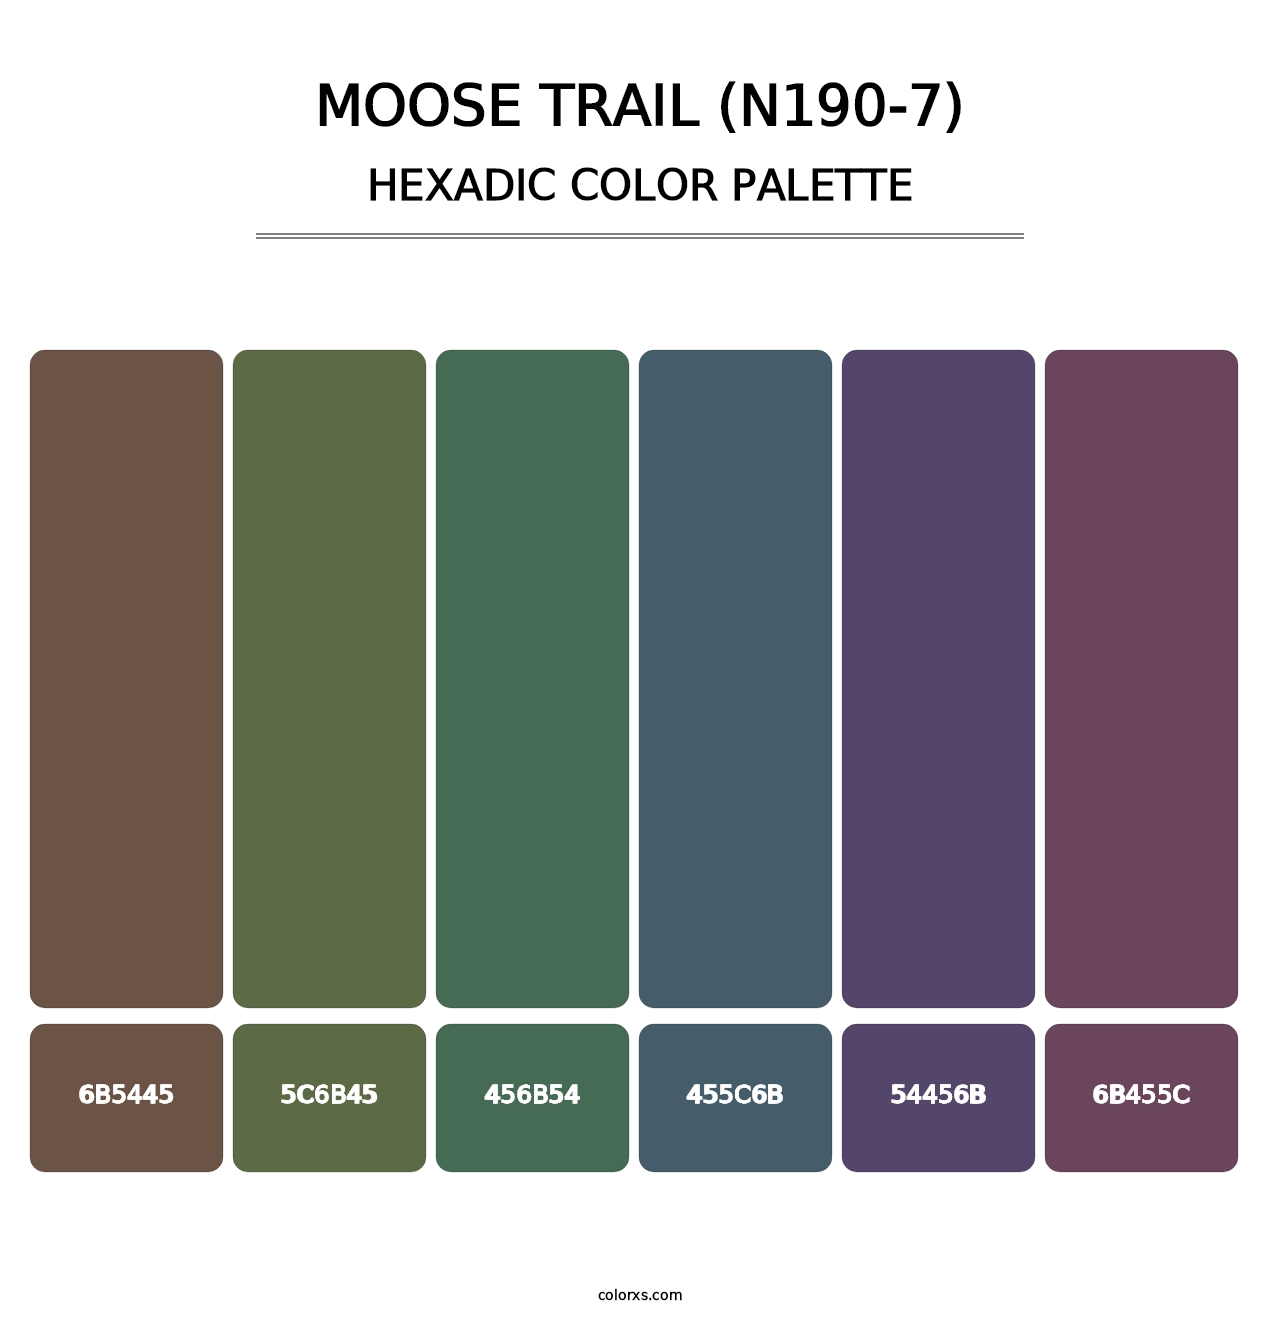 Moose Trail (N190-7) - Hexadic Color Palette